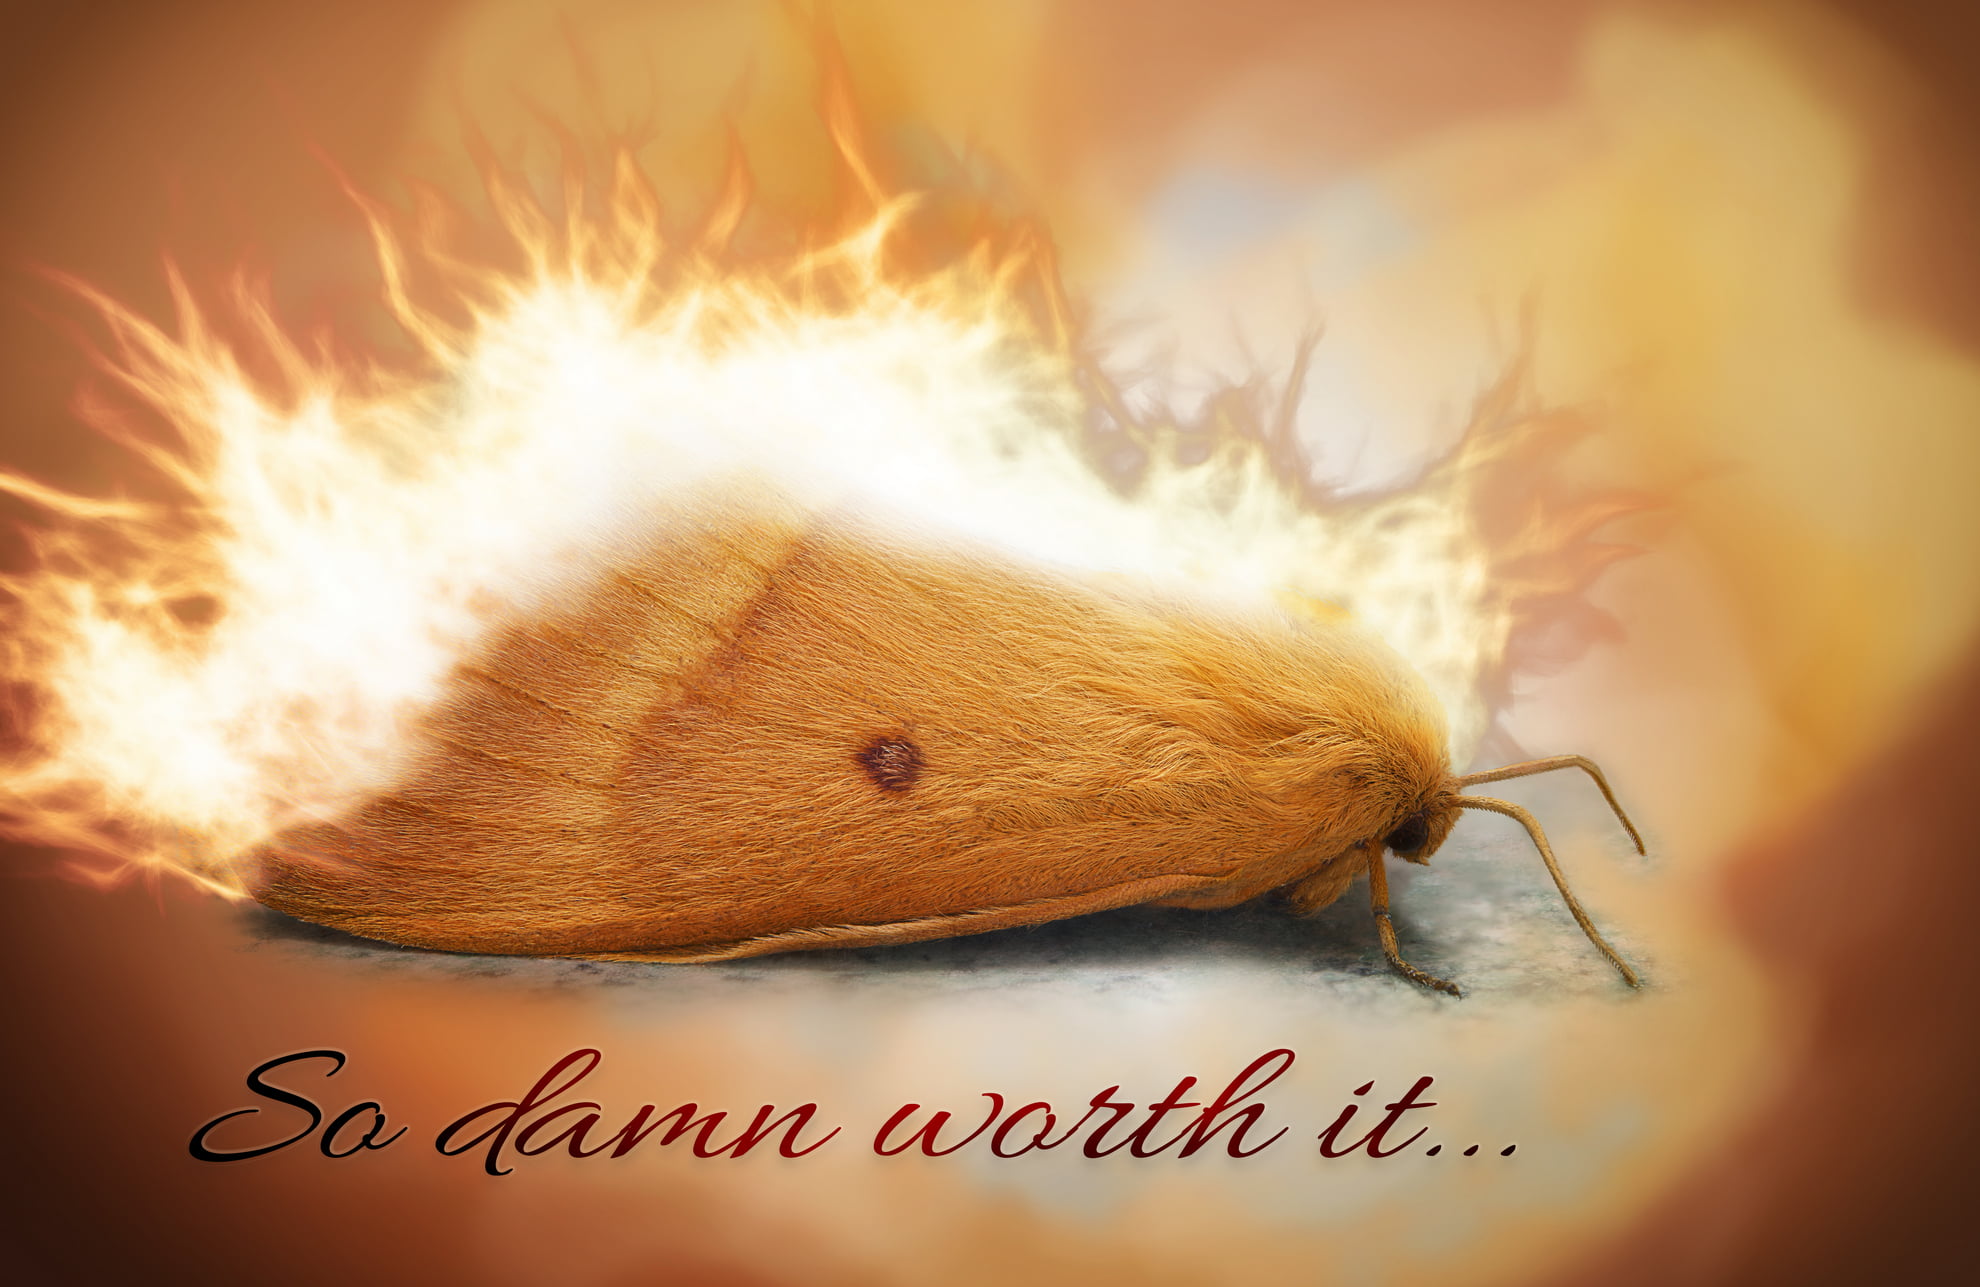 Moth in flames